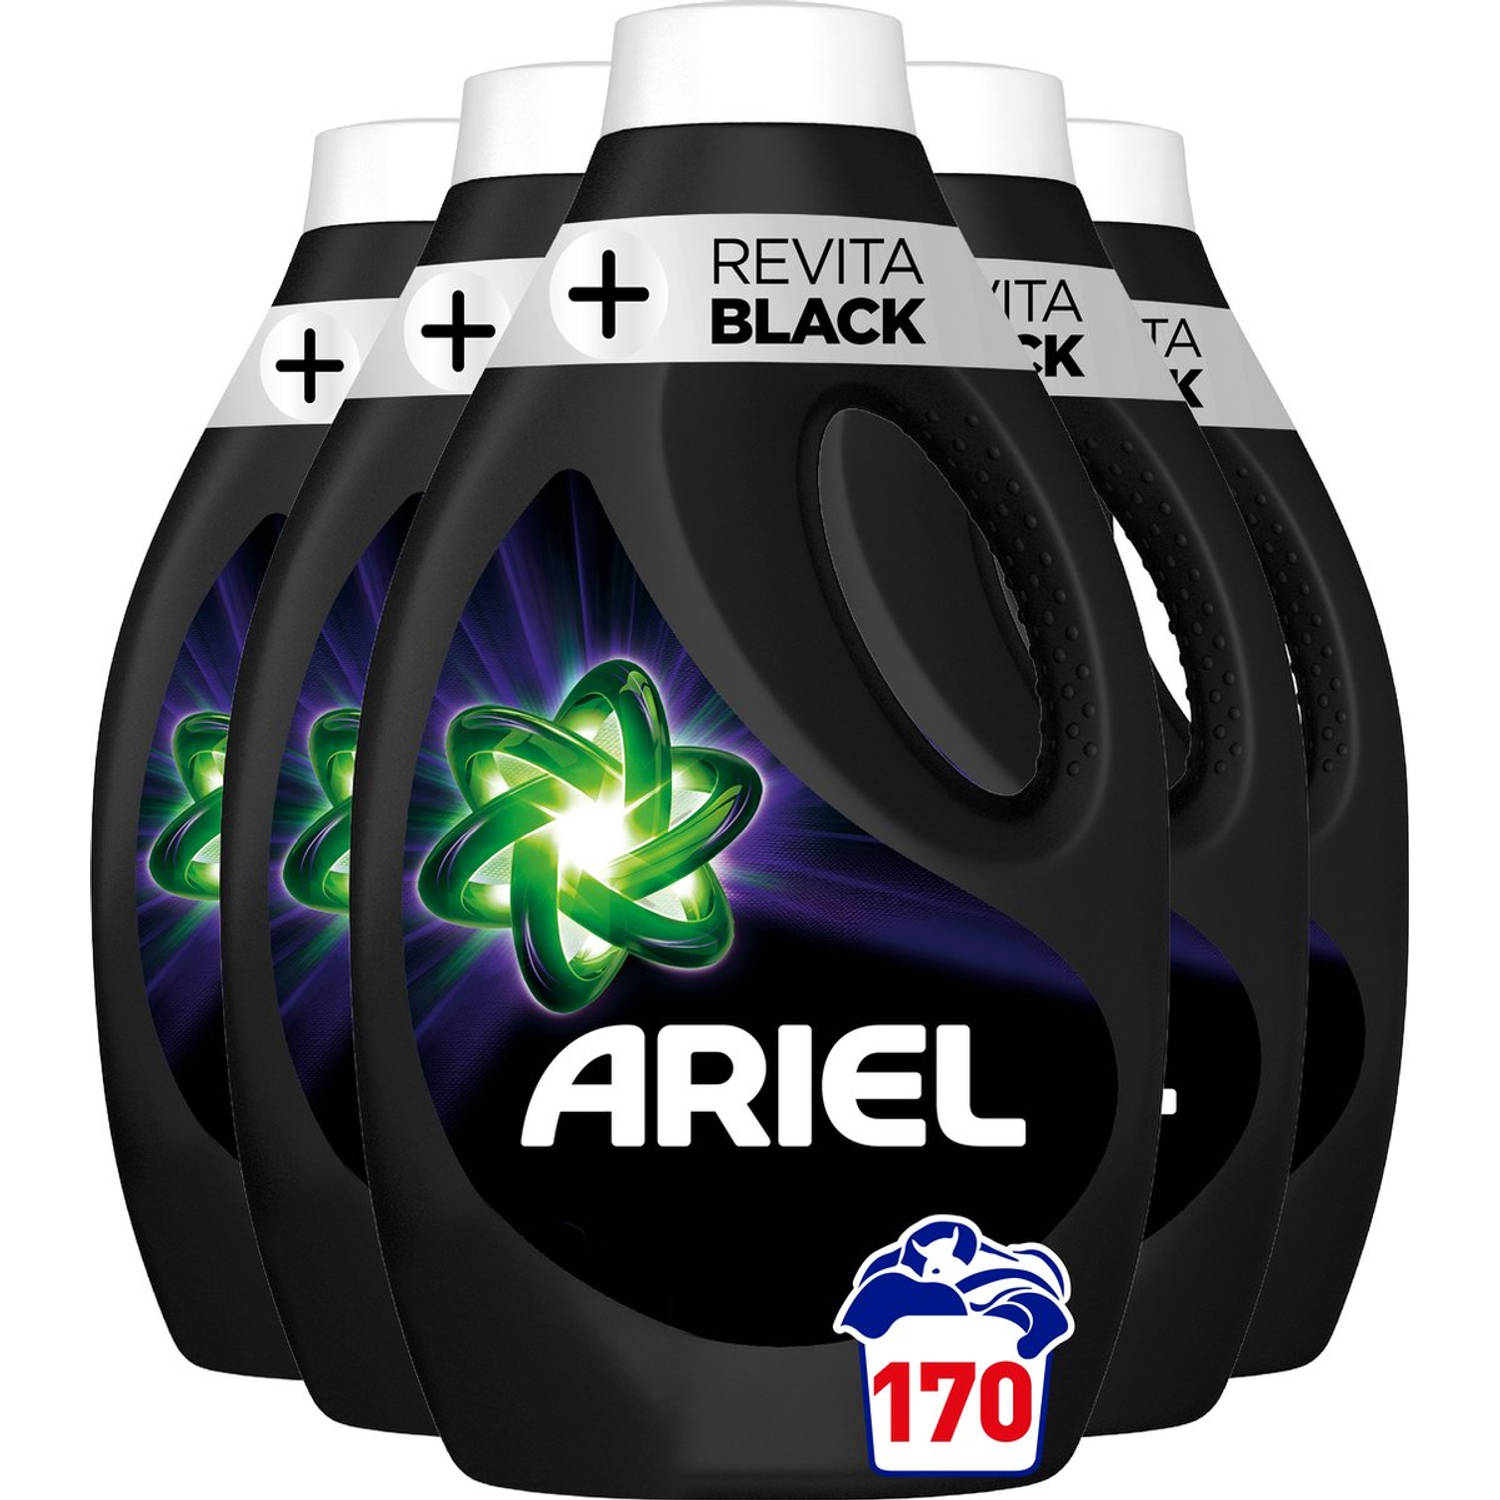 Ariel Vloeibaar Wasmiddel - +Revitablack - Voordeelverpakking 5 x 34 Wasbeurten